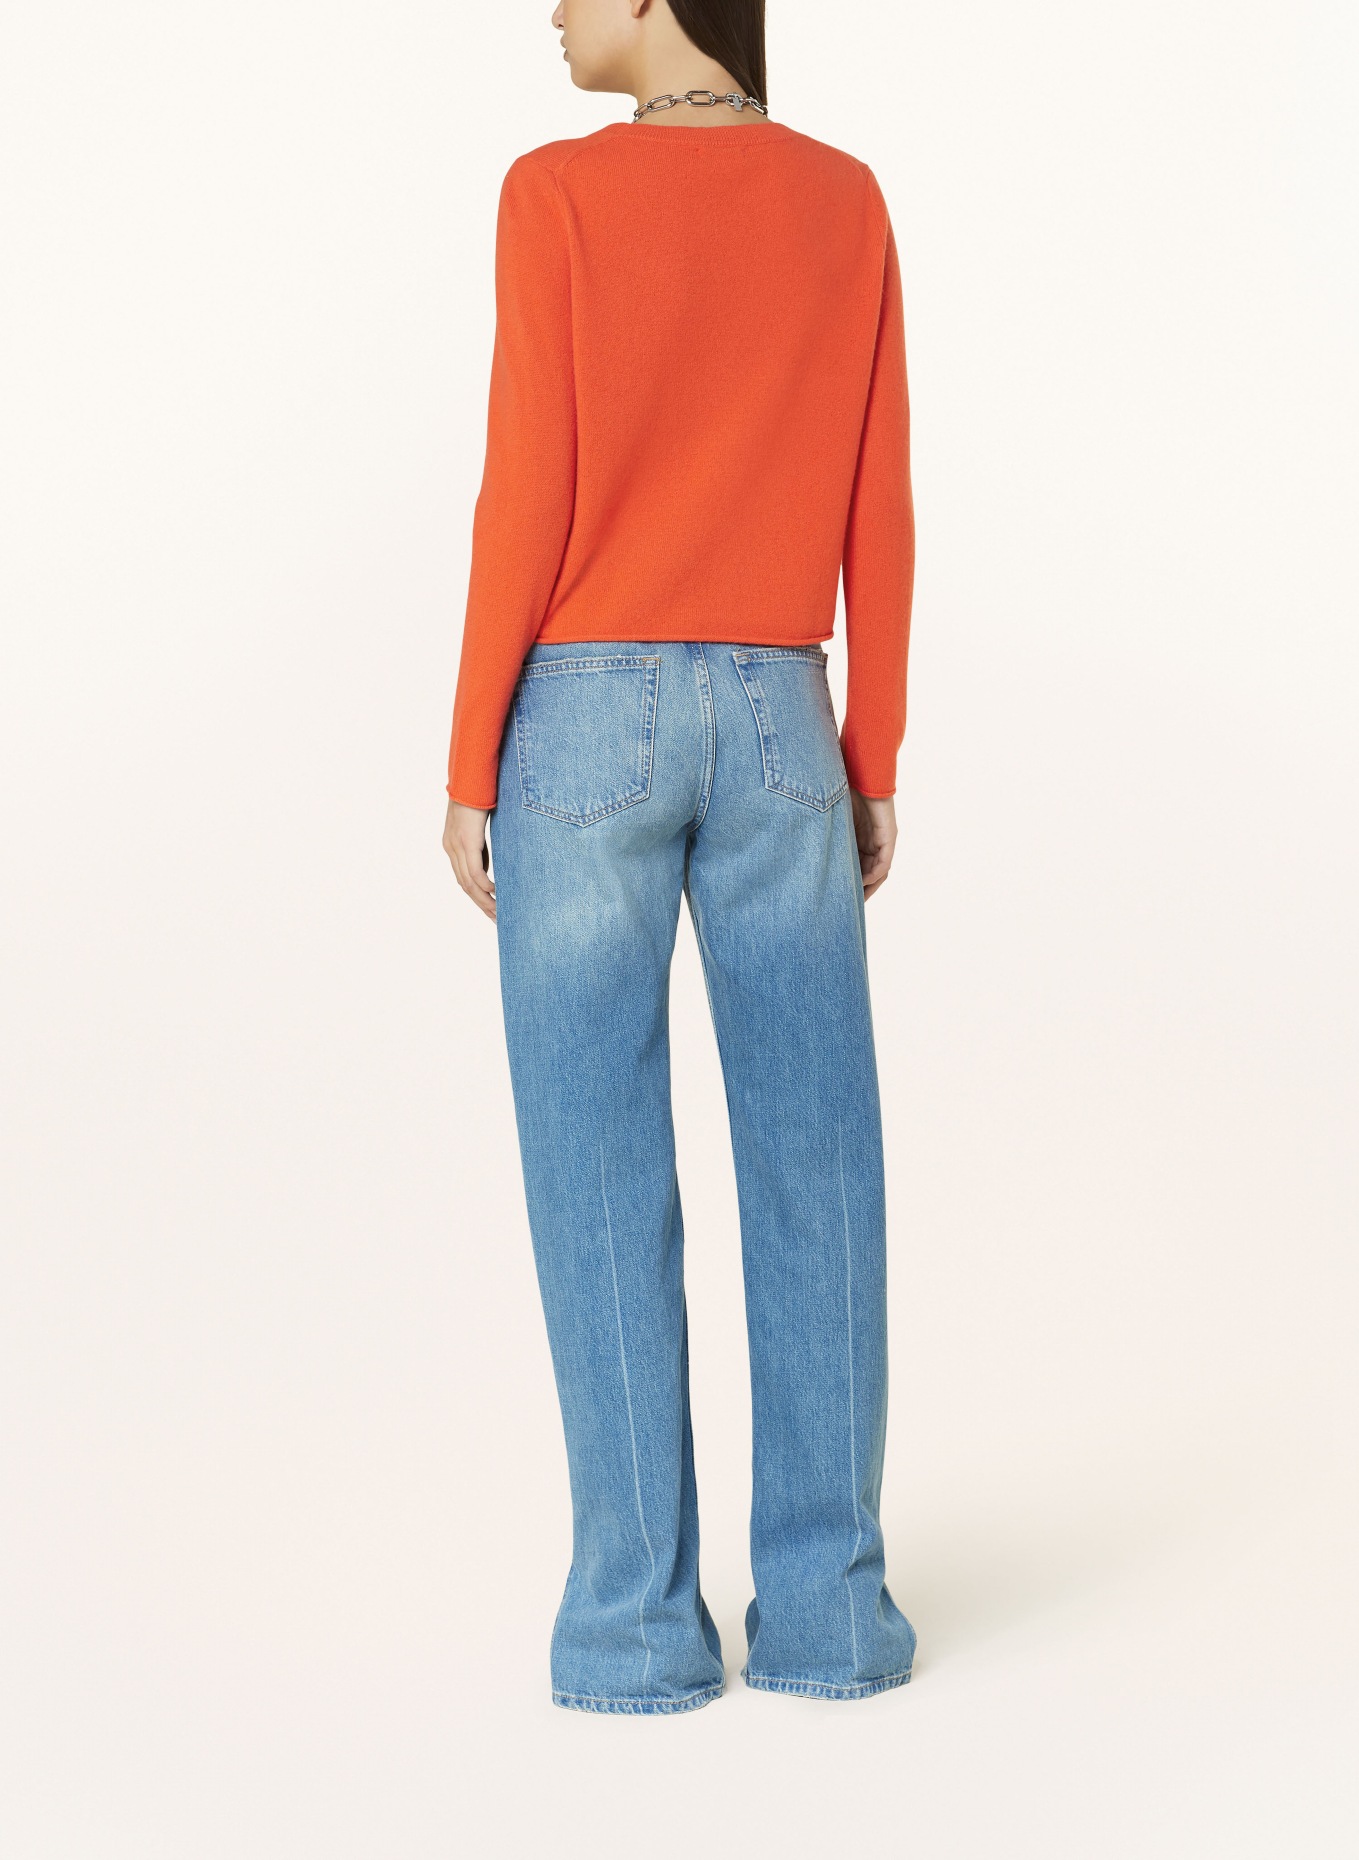 MRS & HUGS Cashmere-Pullover, Farbe: ORANGE (Bild 3)